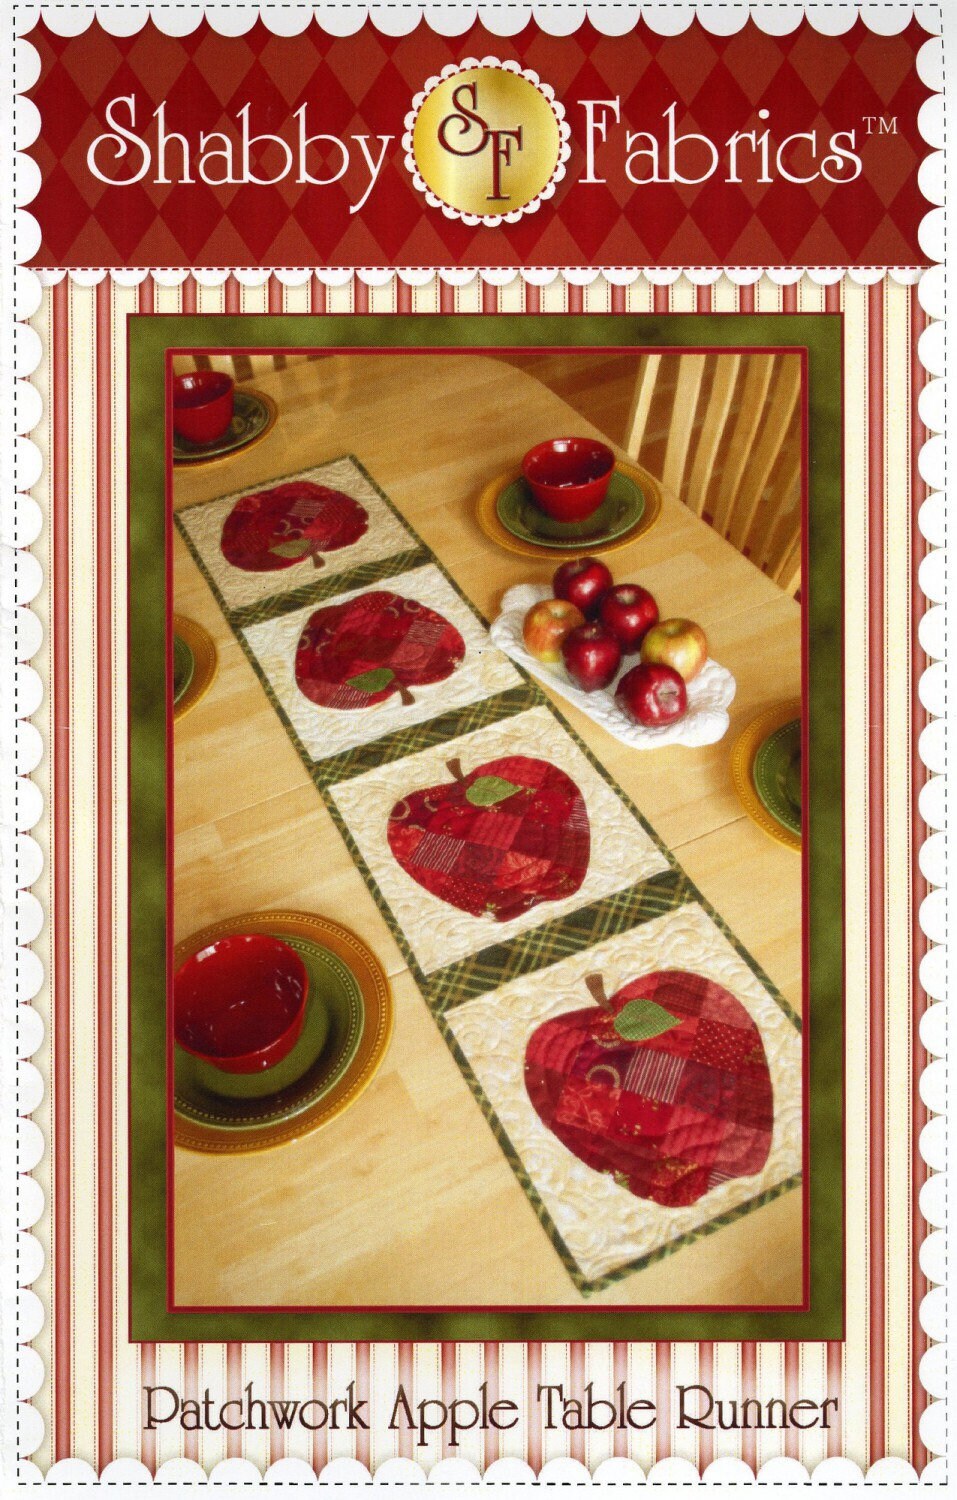 Patchwork Apple Table Runner Pattern - Shabby Fabrics - Jennifer Bosworth - Summer Table Runner Pattern